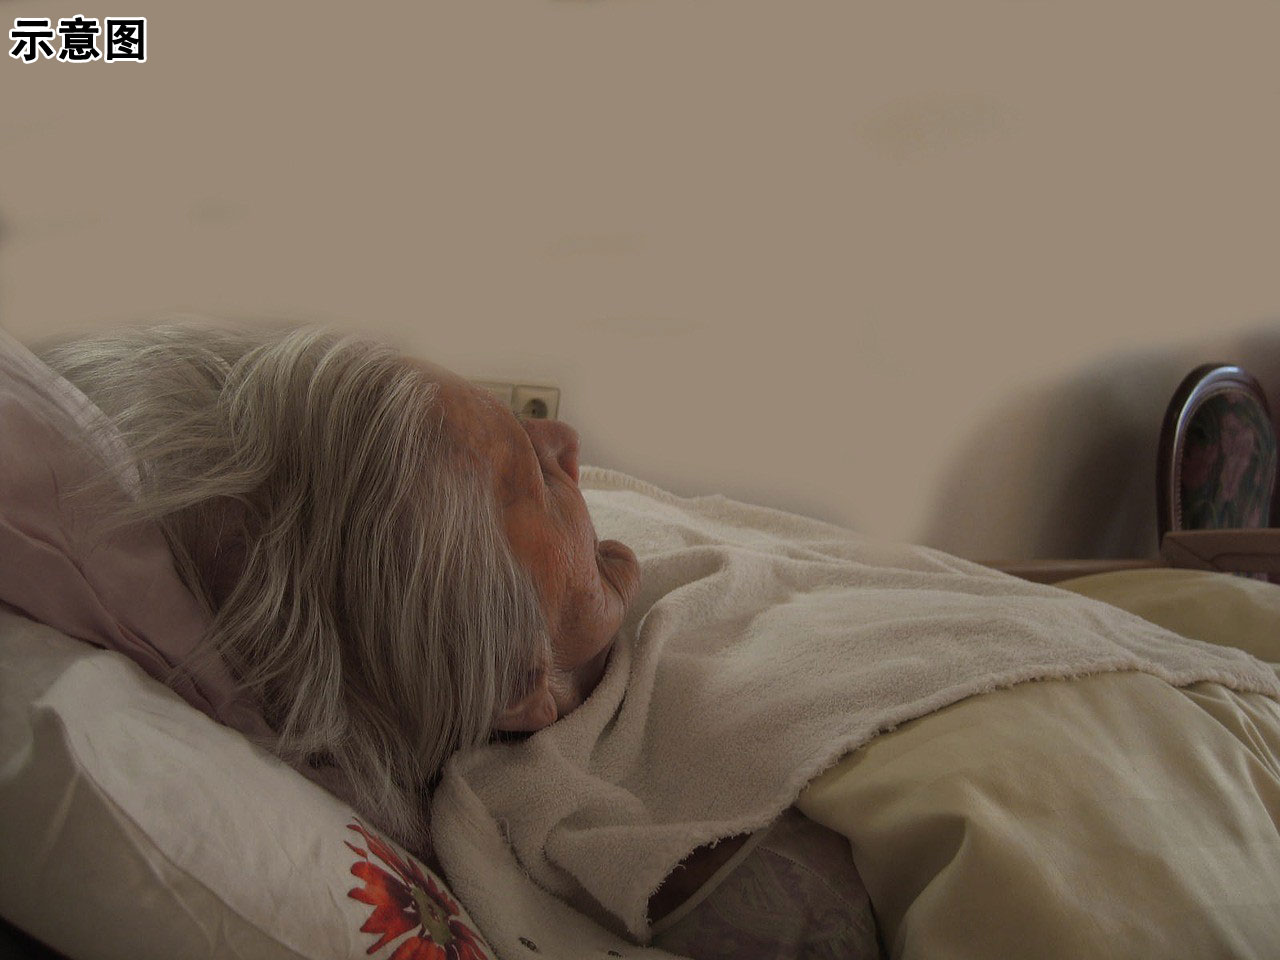 老妇人因疗养院过失身亡。图为示意图，非当事阿嬷。